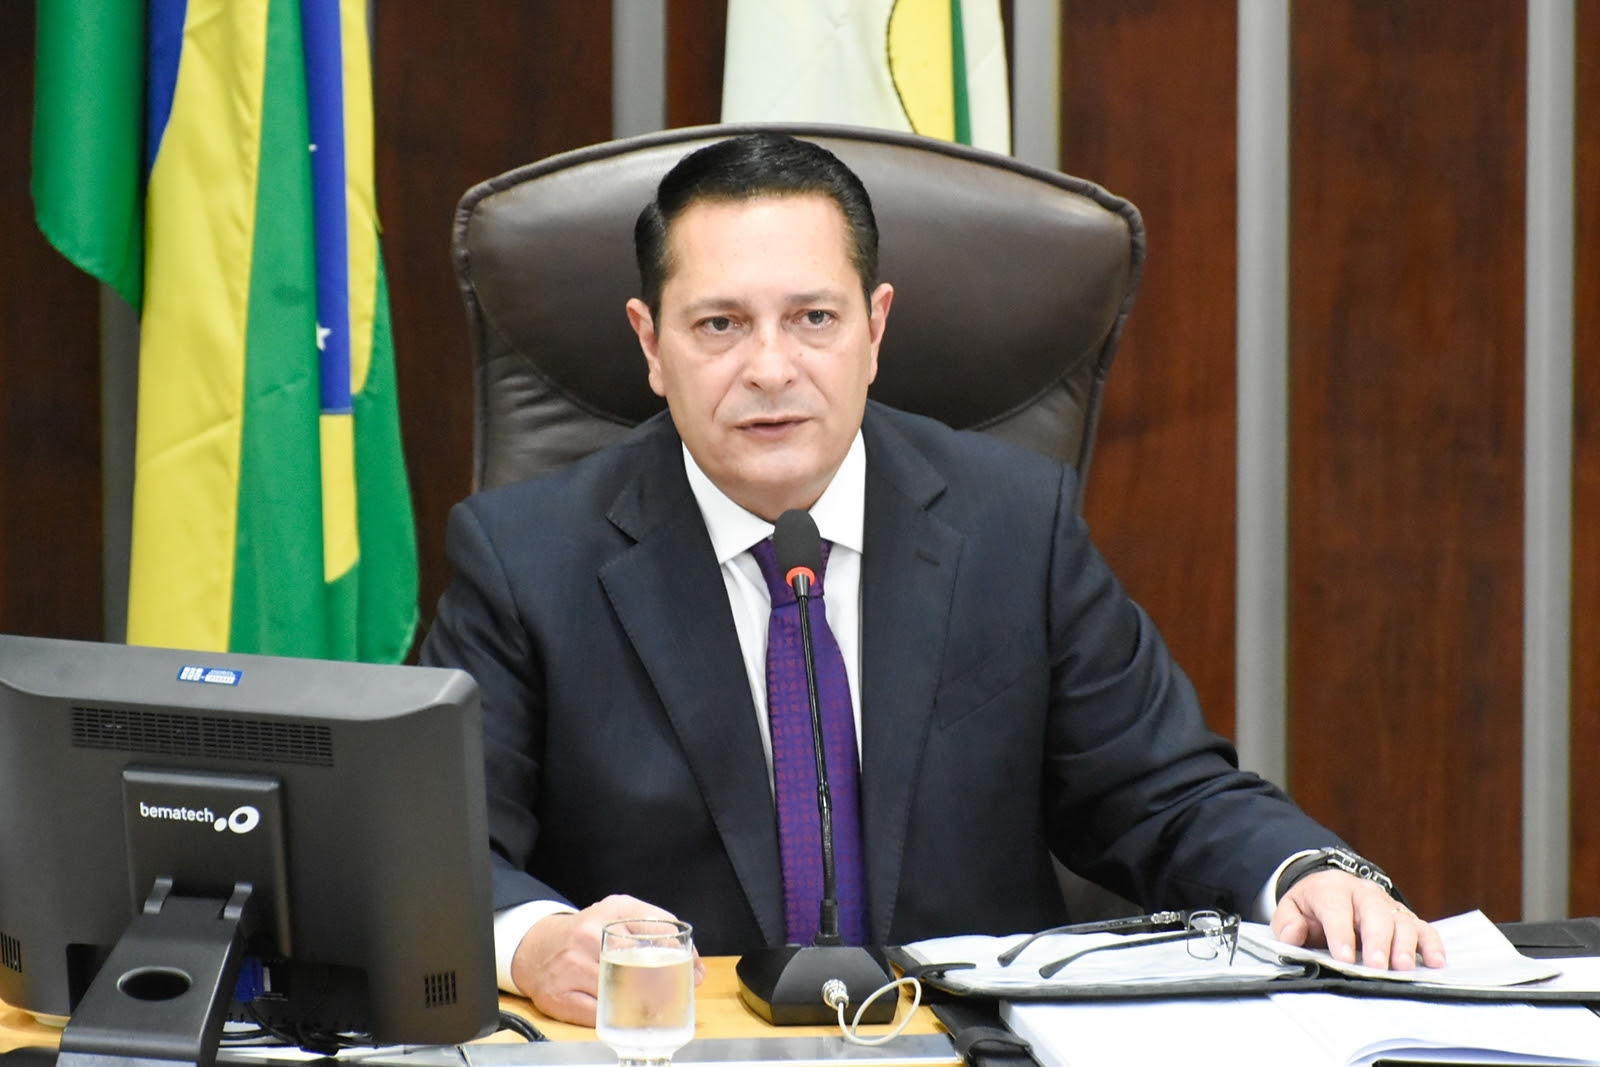 Ezequiel Ferreira solicita série de investimentos para região salineira do RN